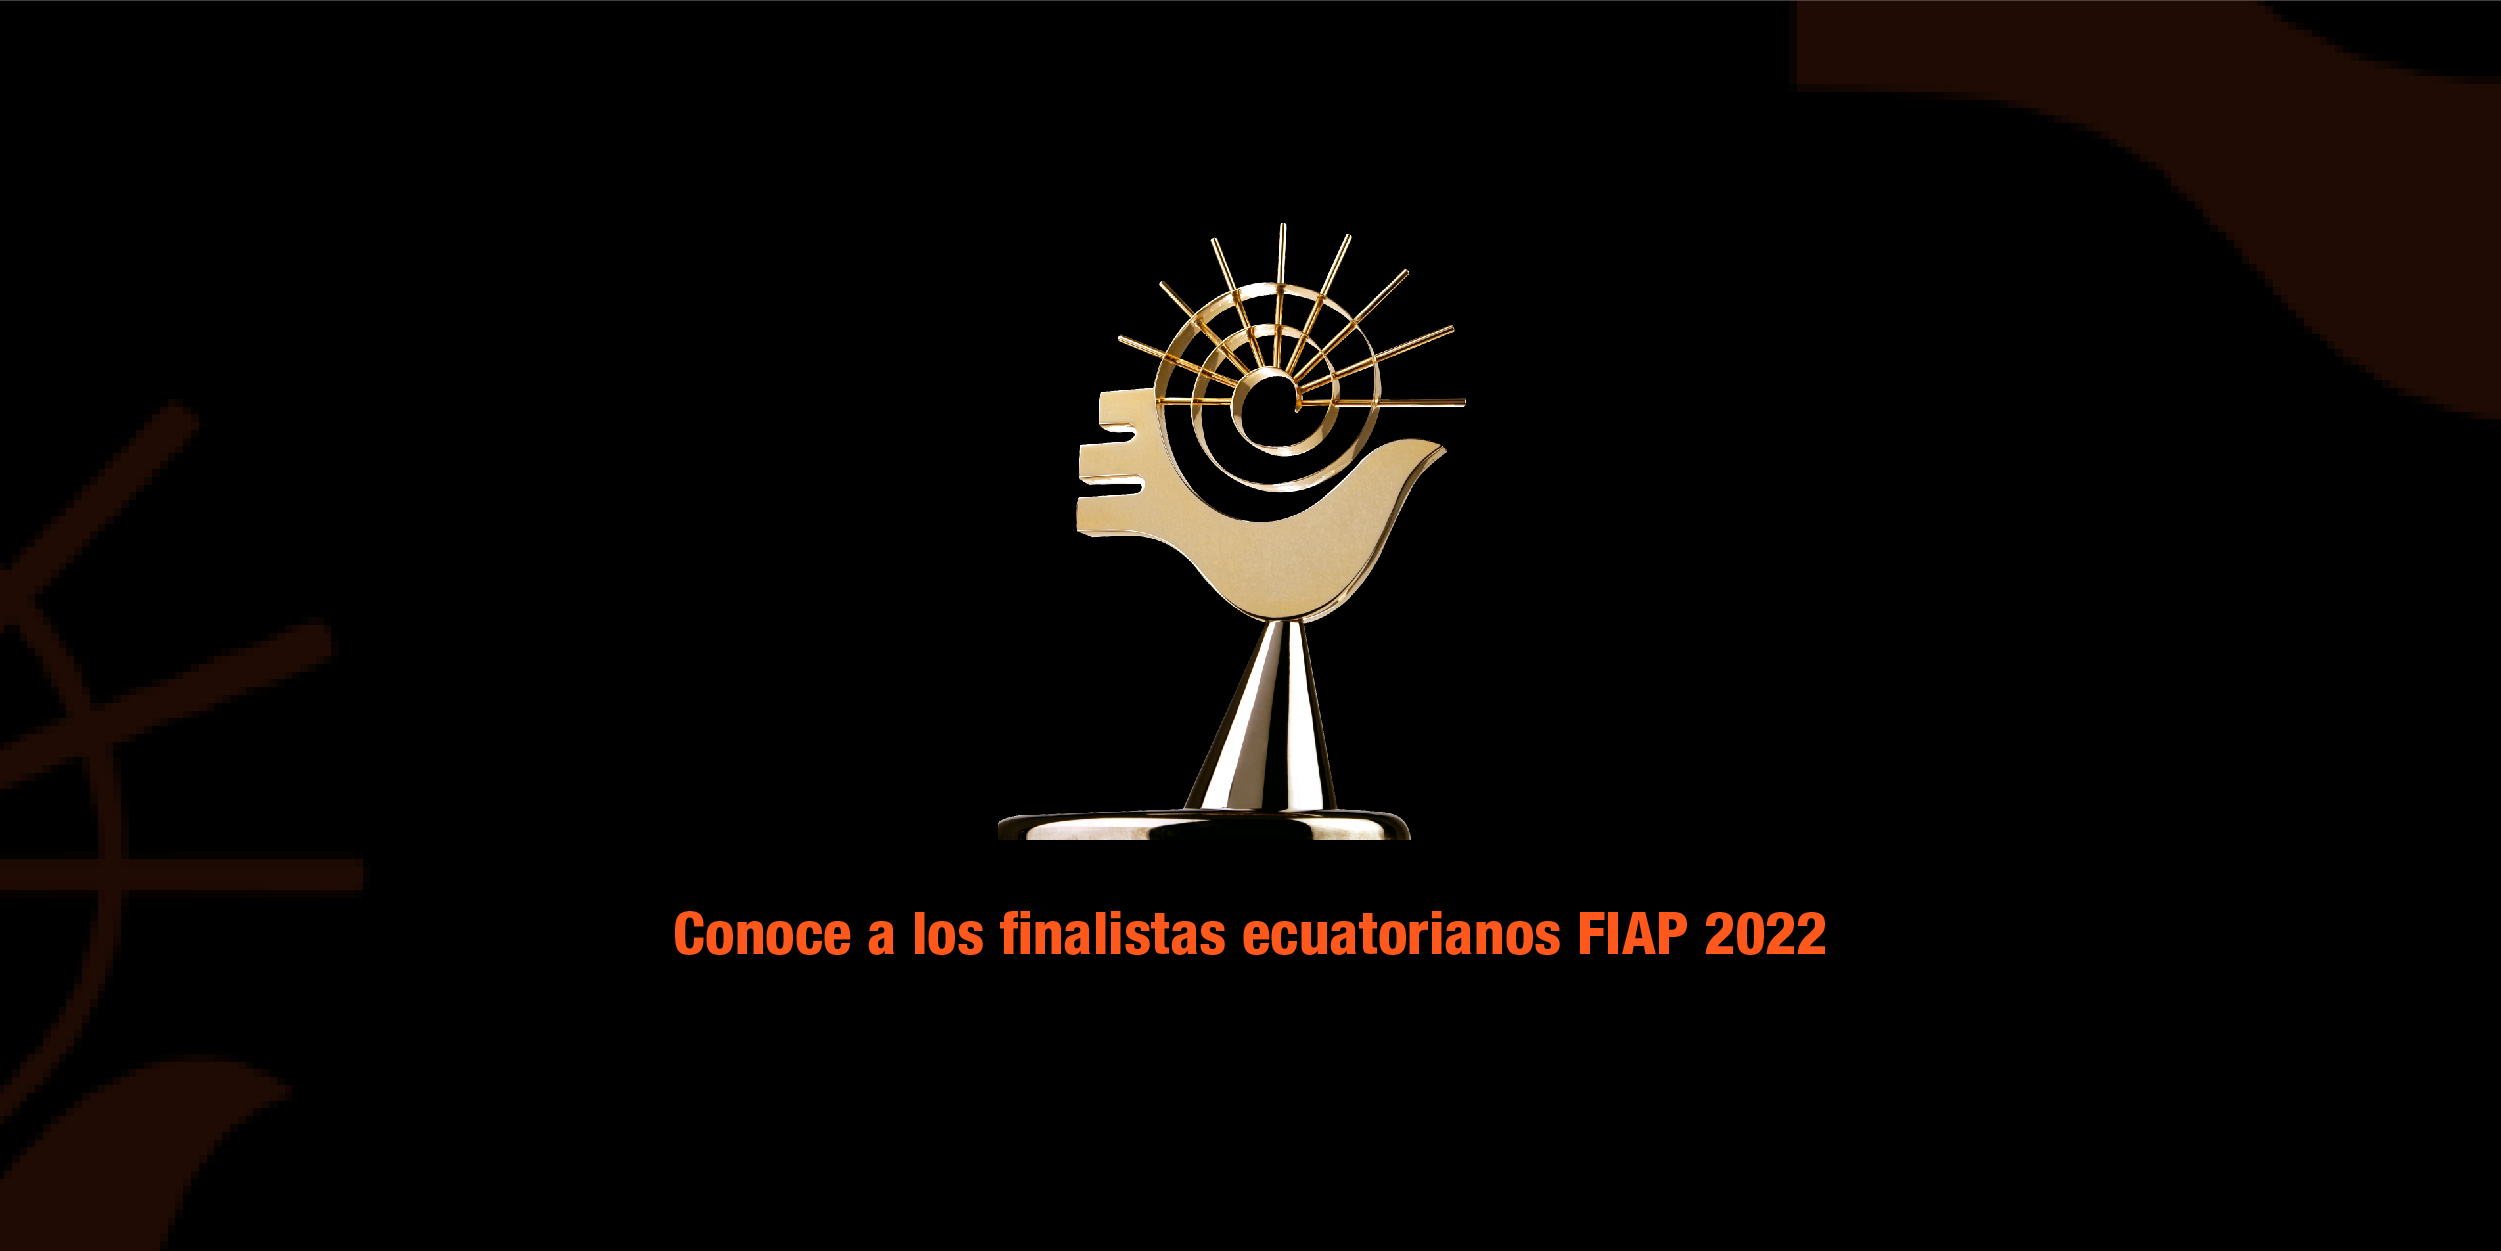  8 marcas ecuatorianas entre los finalistas del FIAP 2022